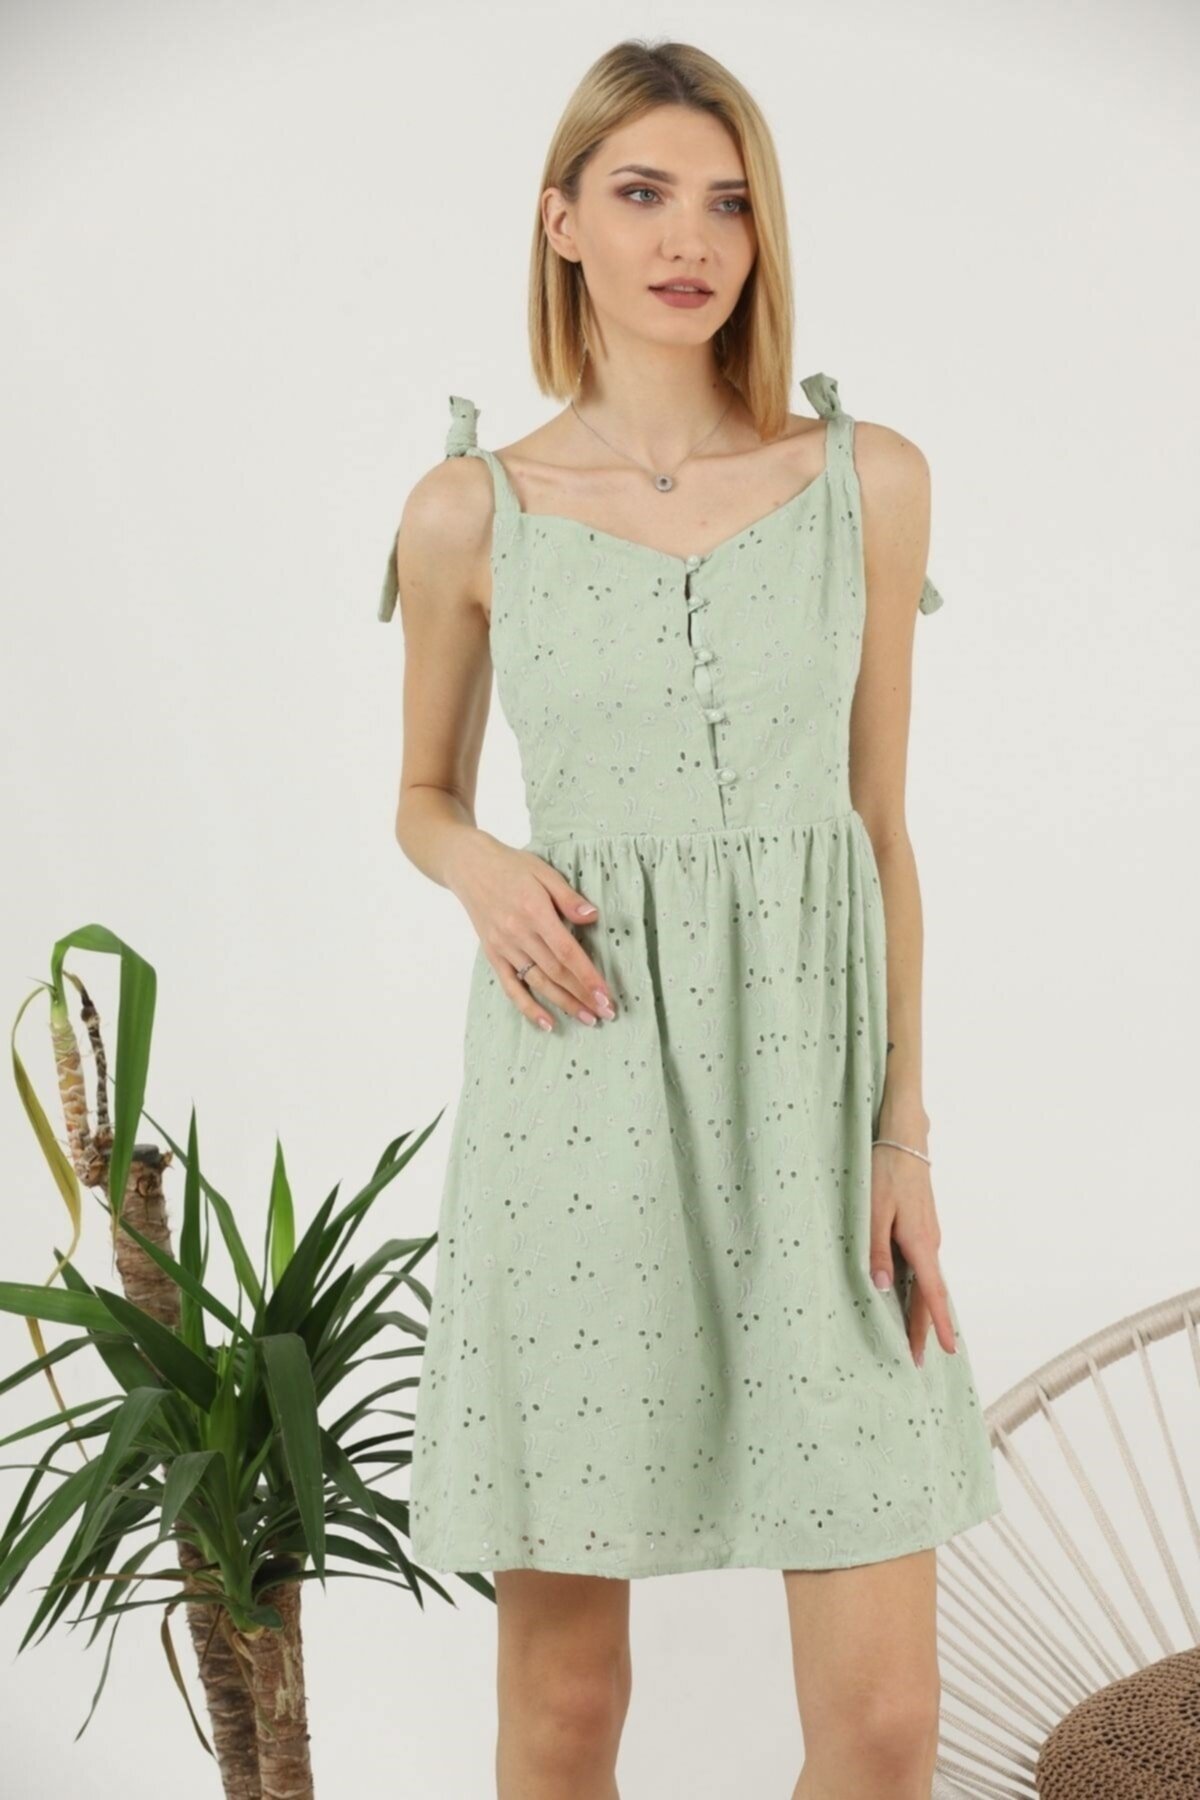 Mylace Mint Brode Omuzdan Bağlama Detaylı Askılı Belden Oturan Mini Elbise